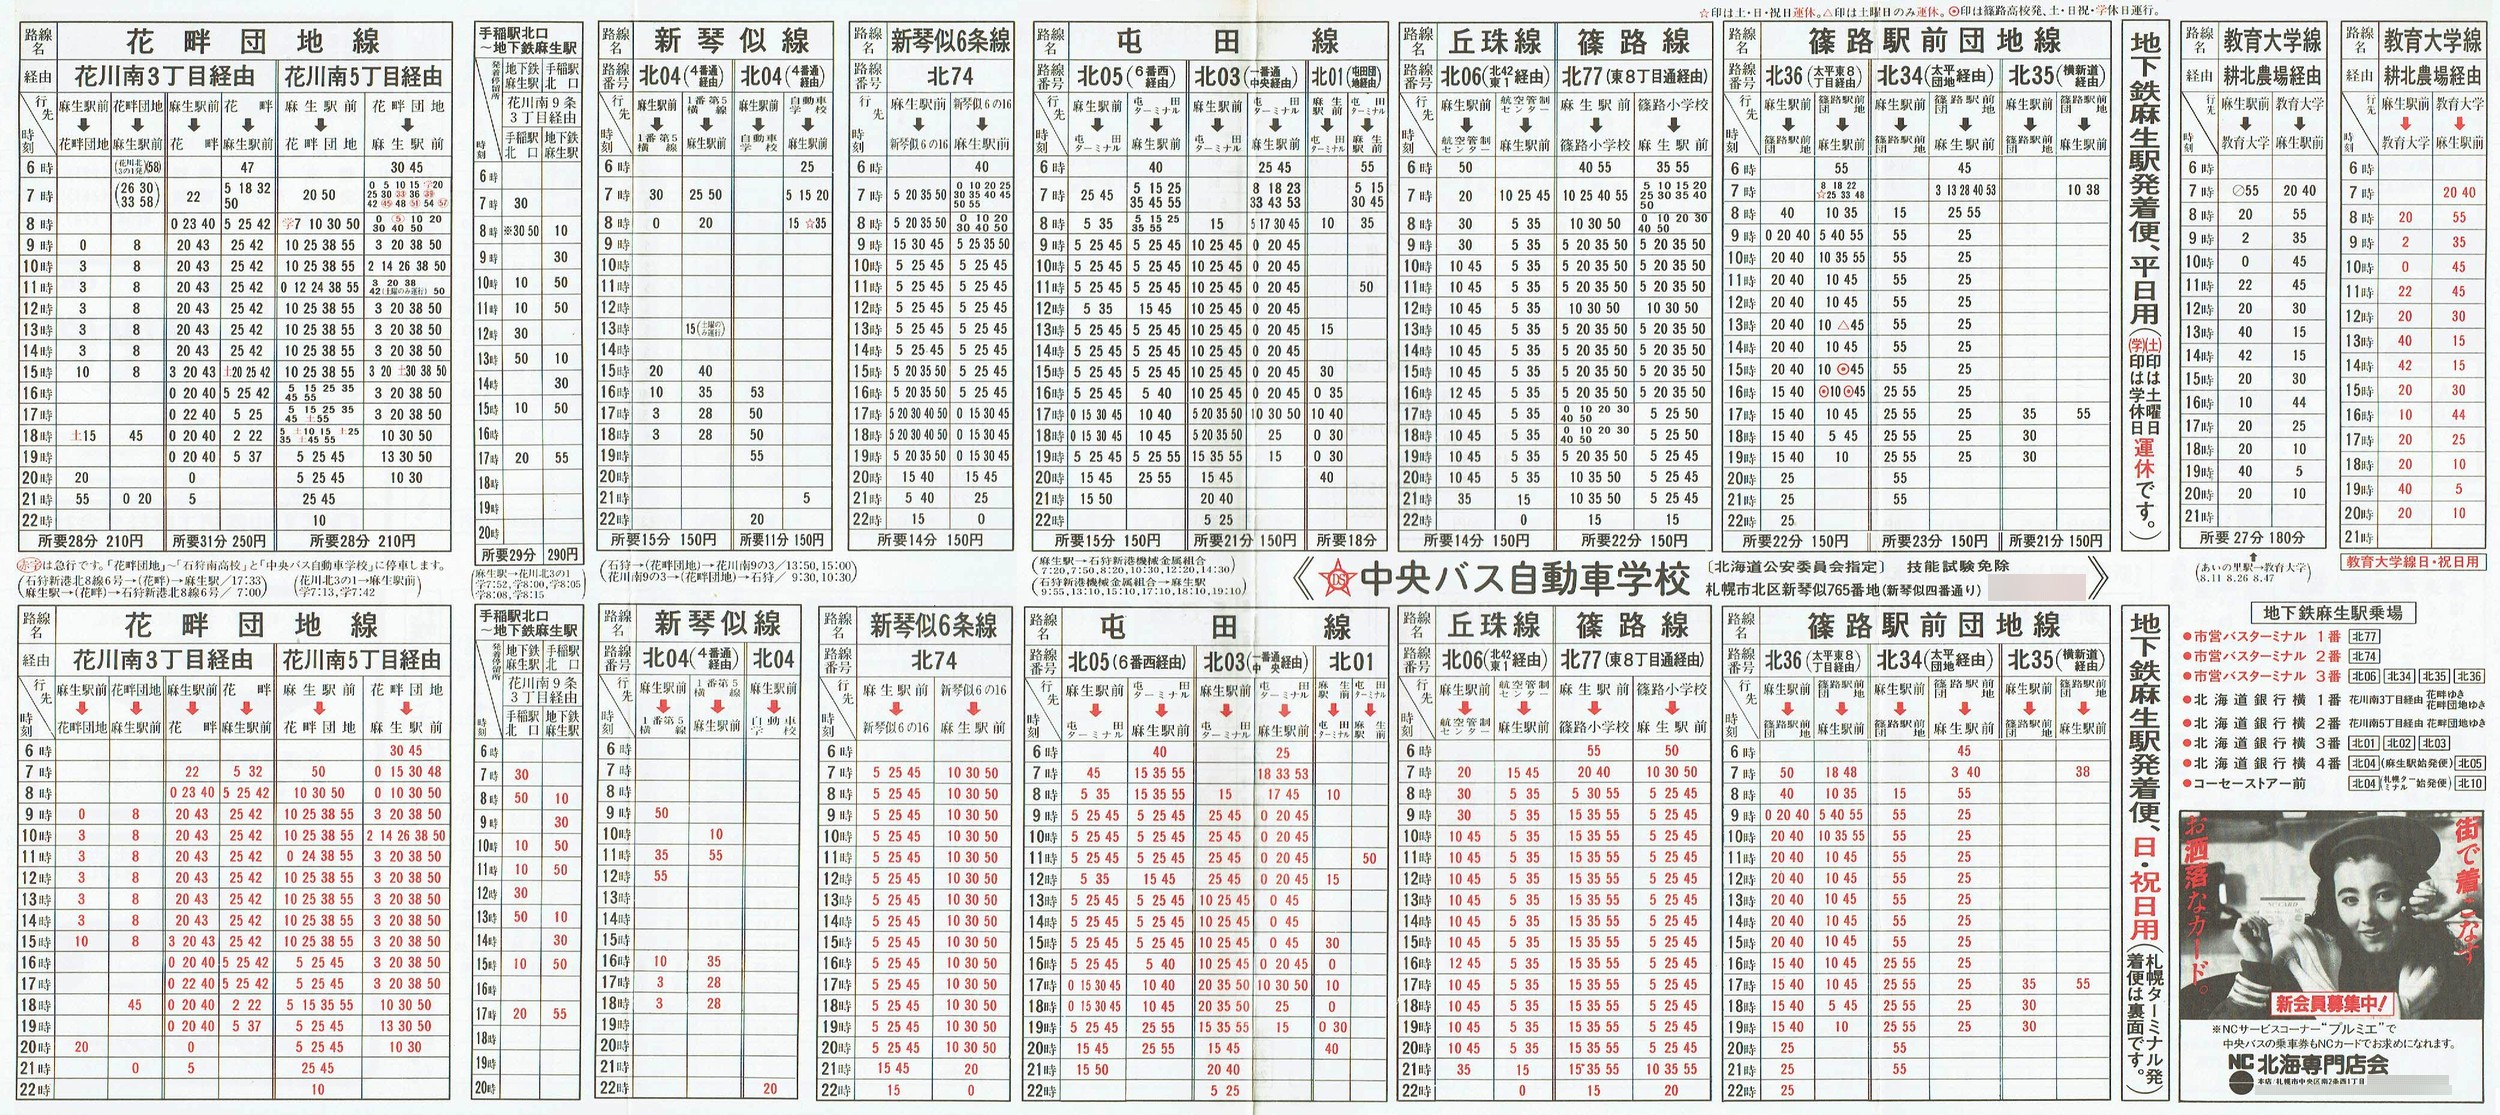 1987-12-01改正_北海道中央バス(札幌)_札幌市内線北方面時刻表裏面